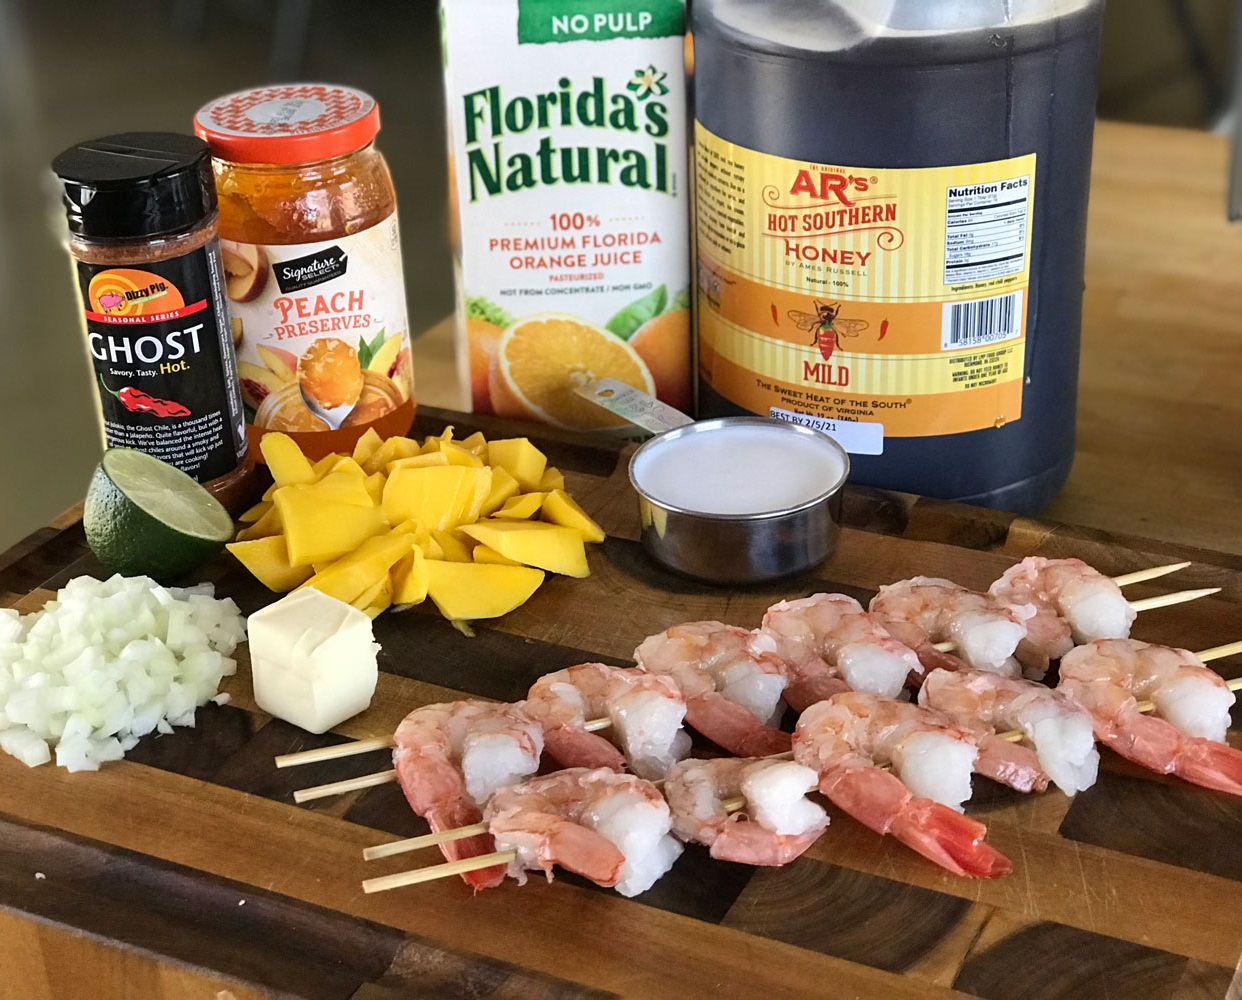 Ingredients for Mang-Ghost glazed grilled shrimp